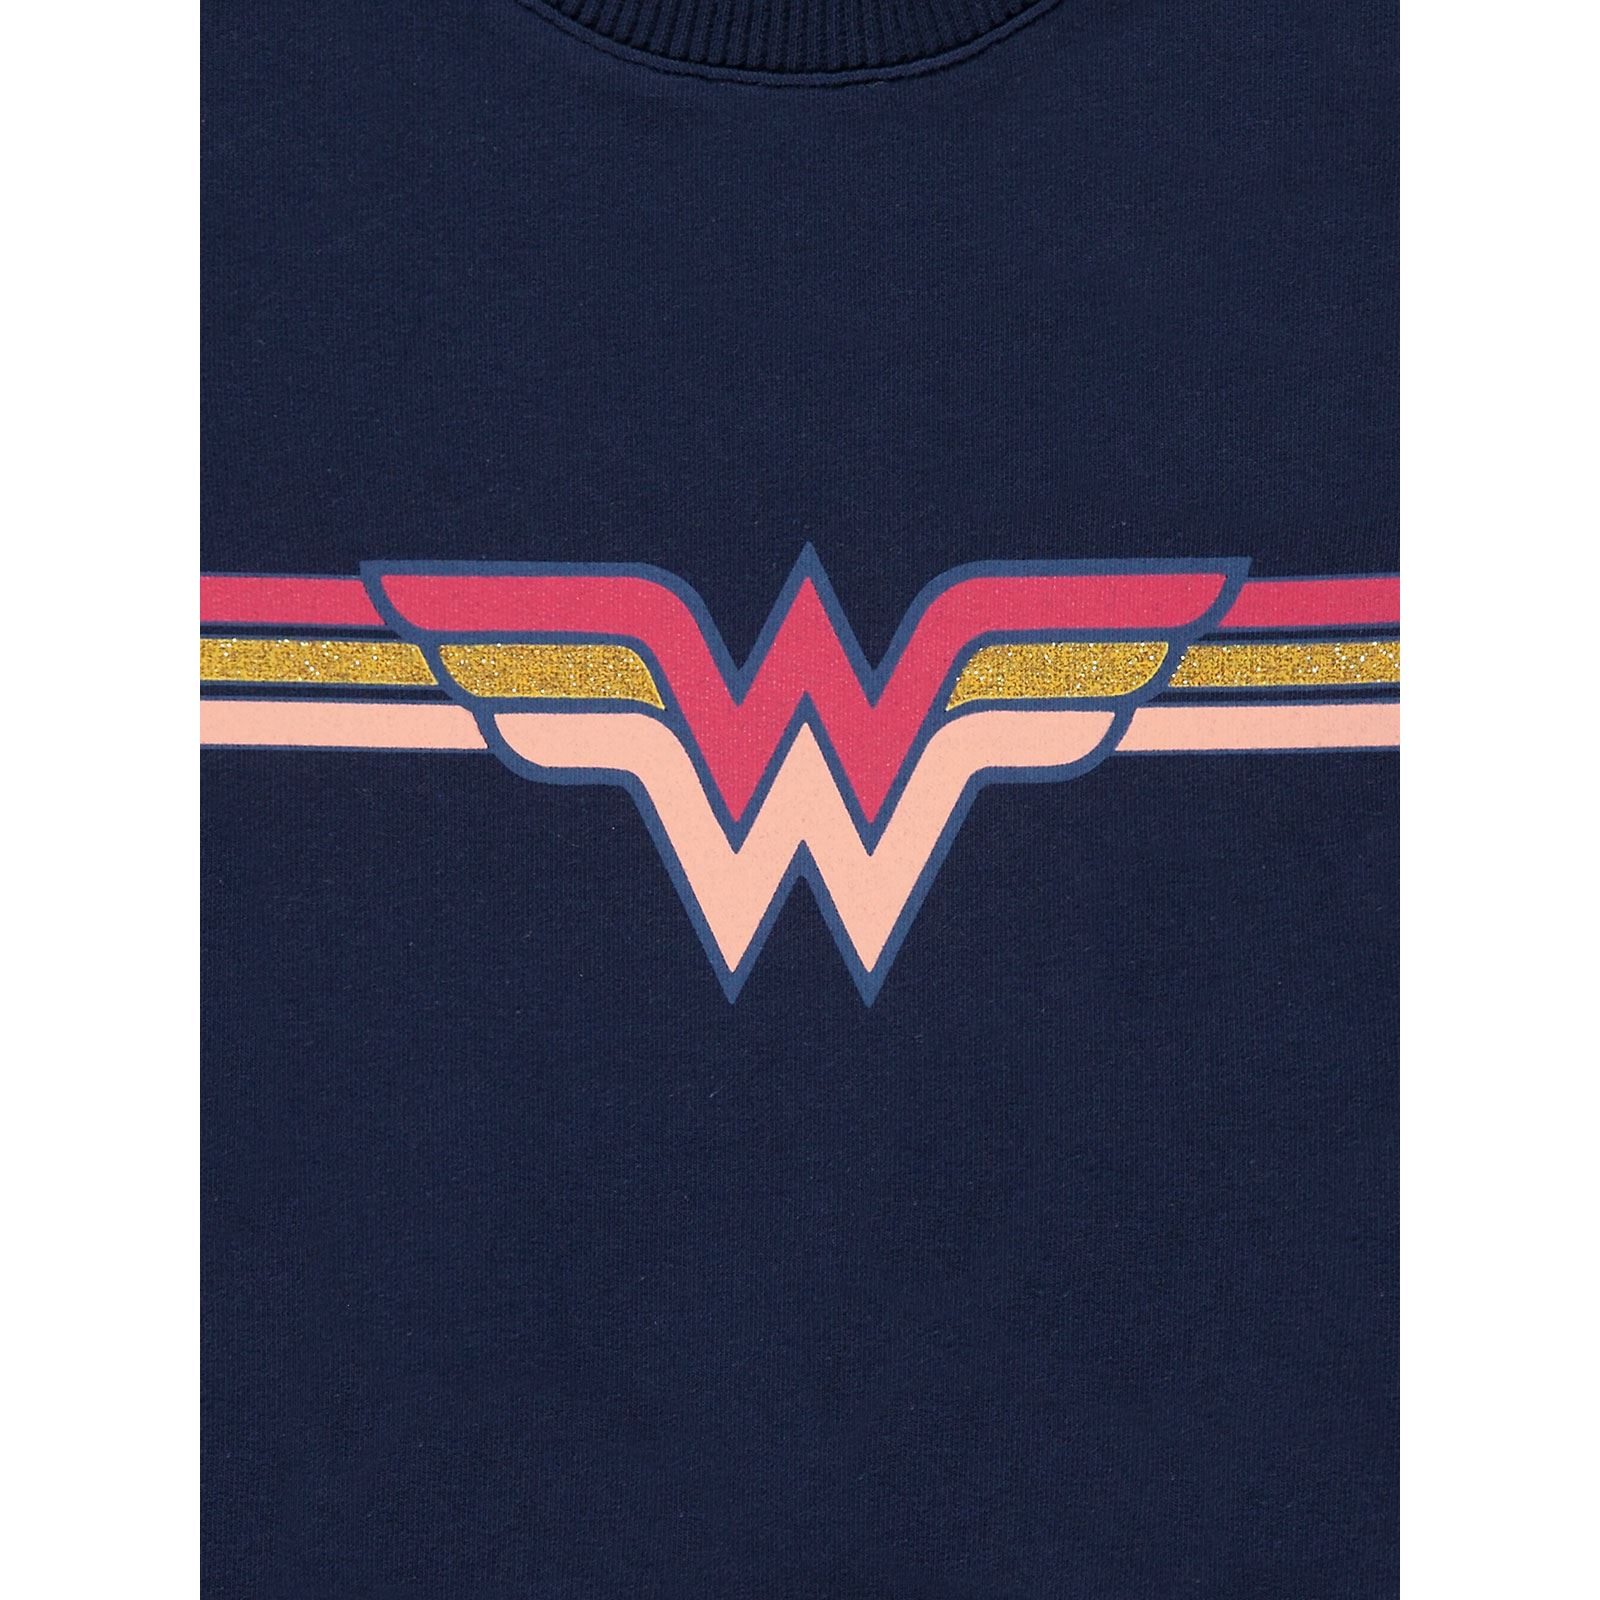 Wonder Woman Kız Bebek Sweatshirt 6-18 Ay Lacivert